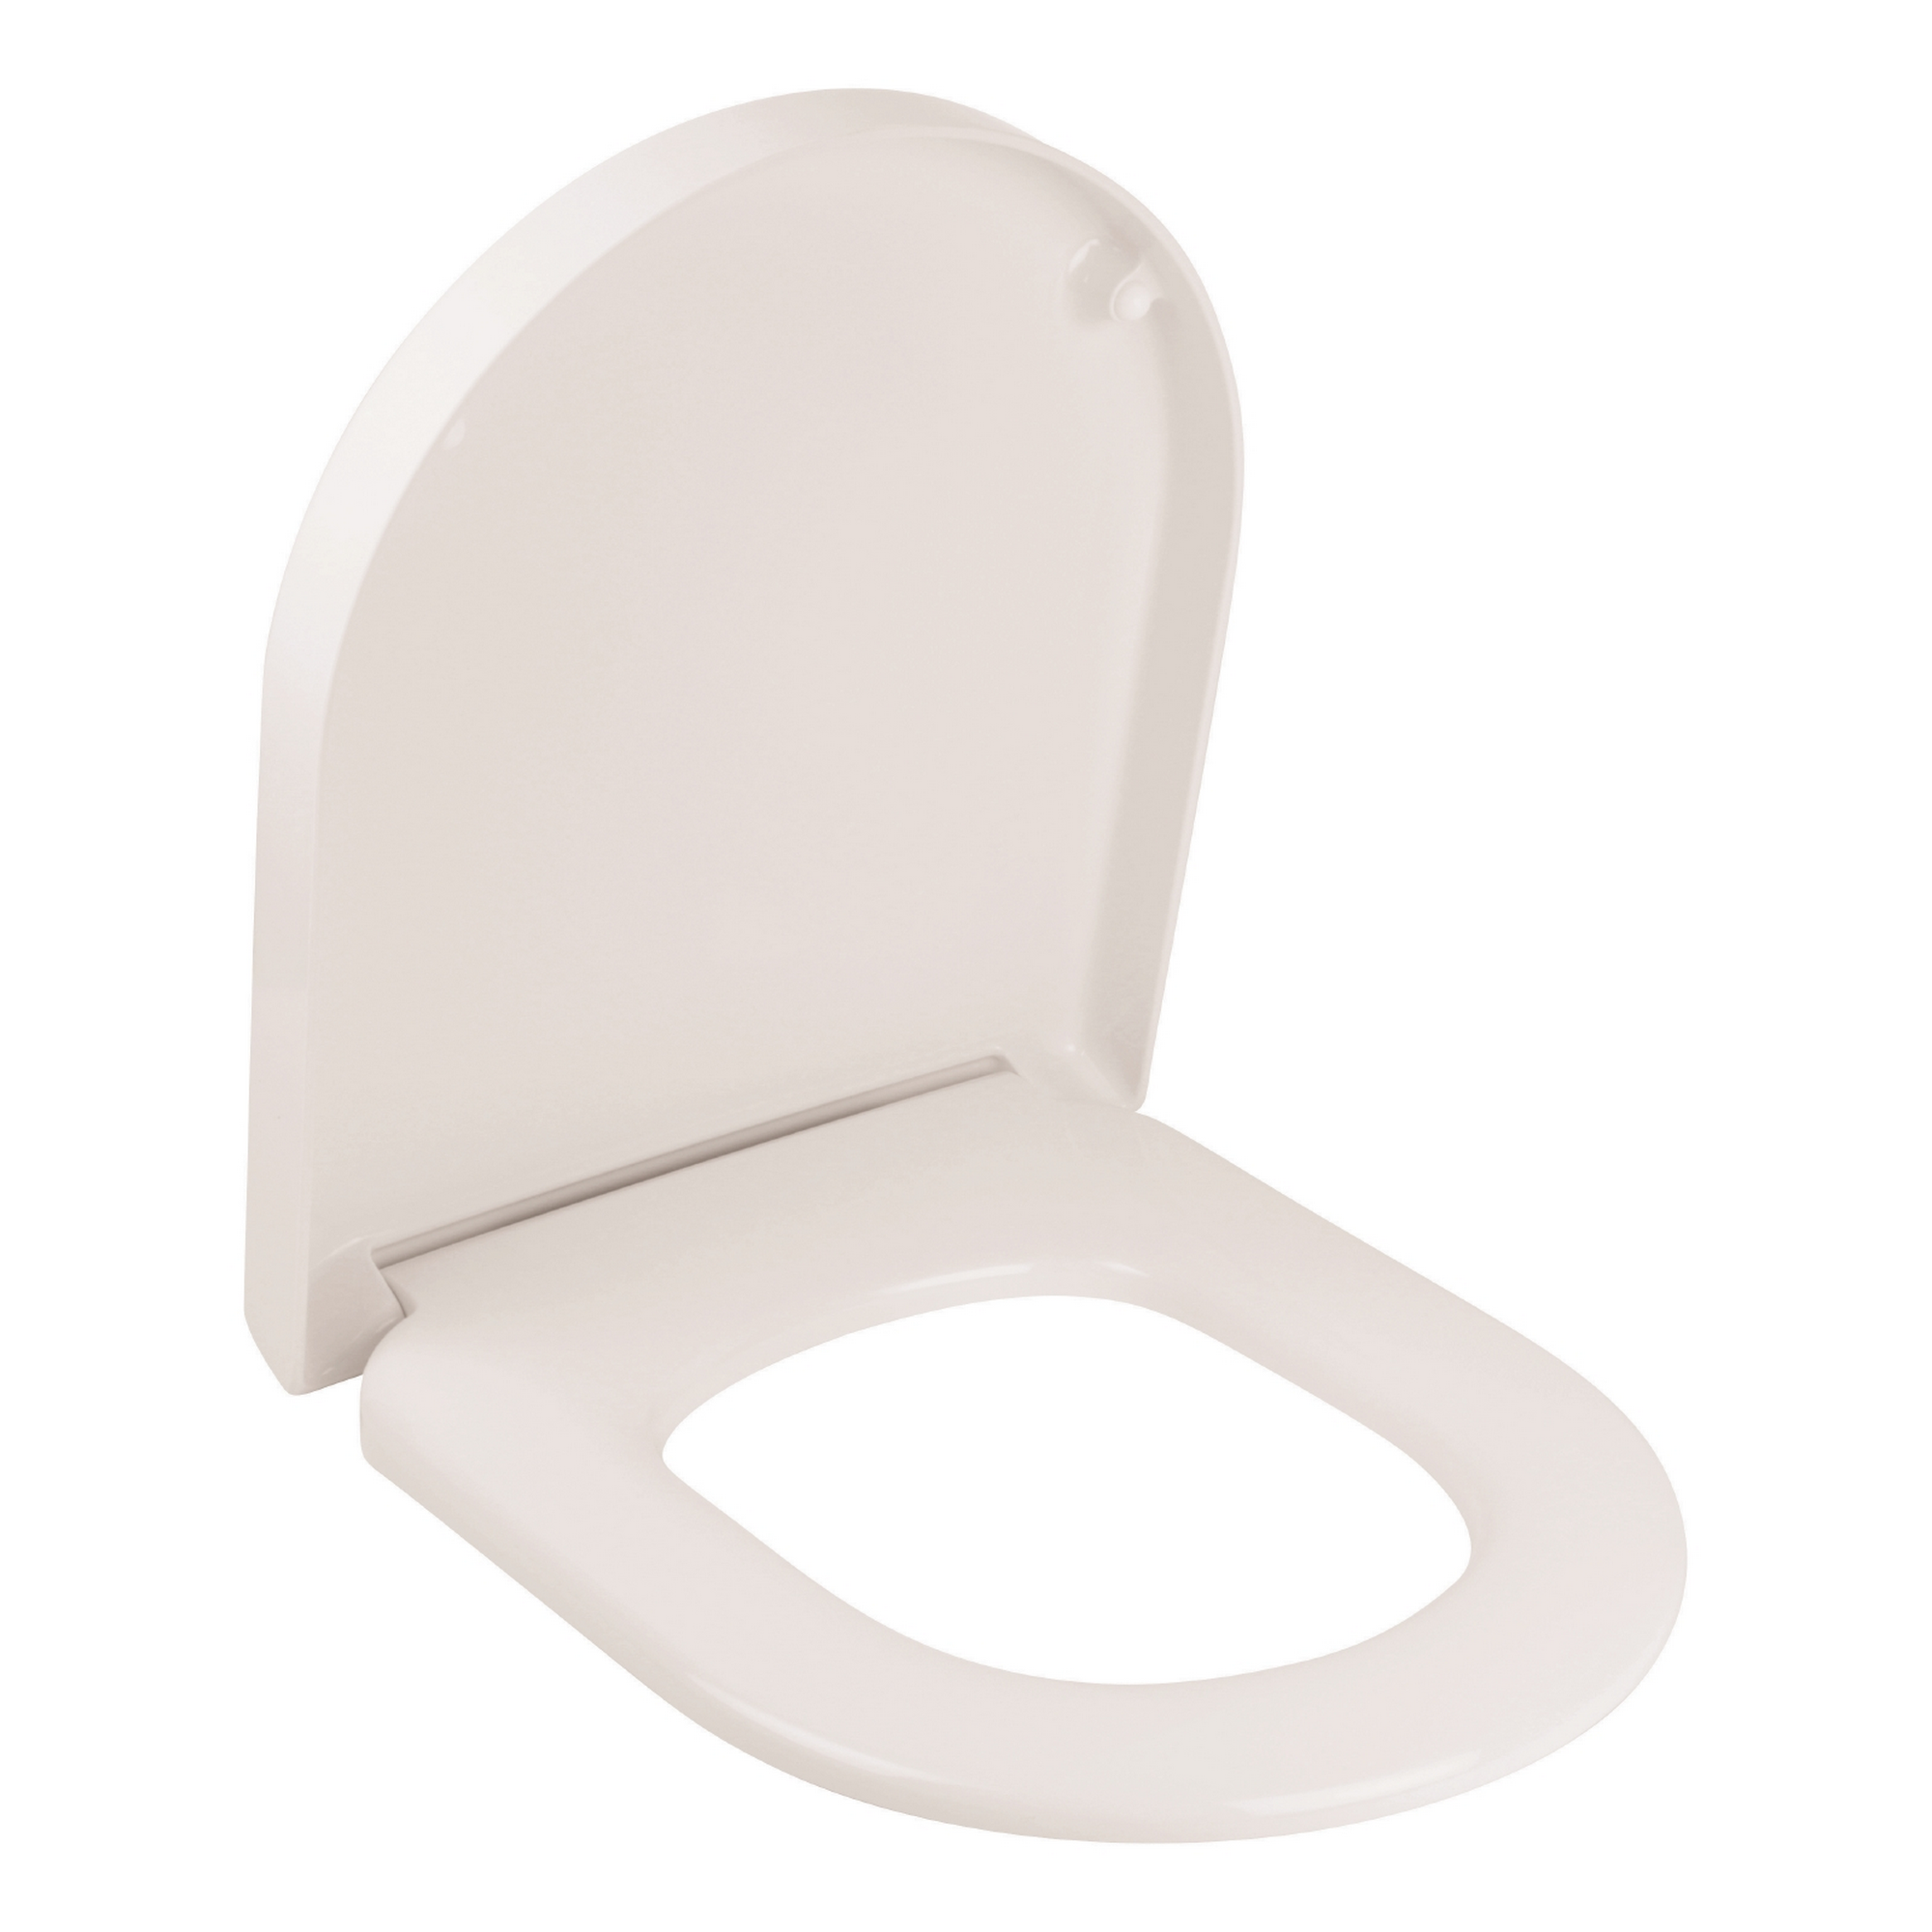 WC-Sitz 'Style Start' weiß  Duroplast, mit Absenkautomatik + product picture